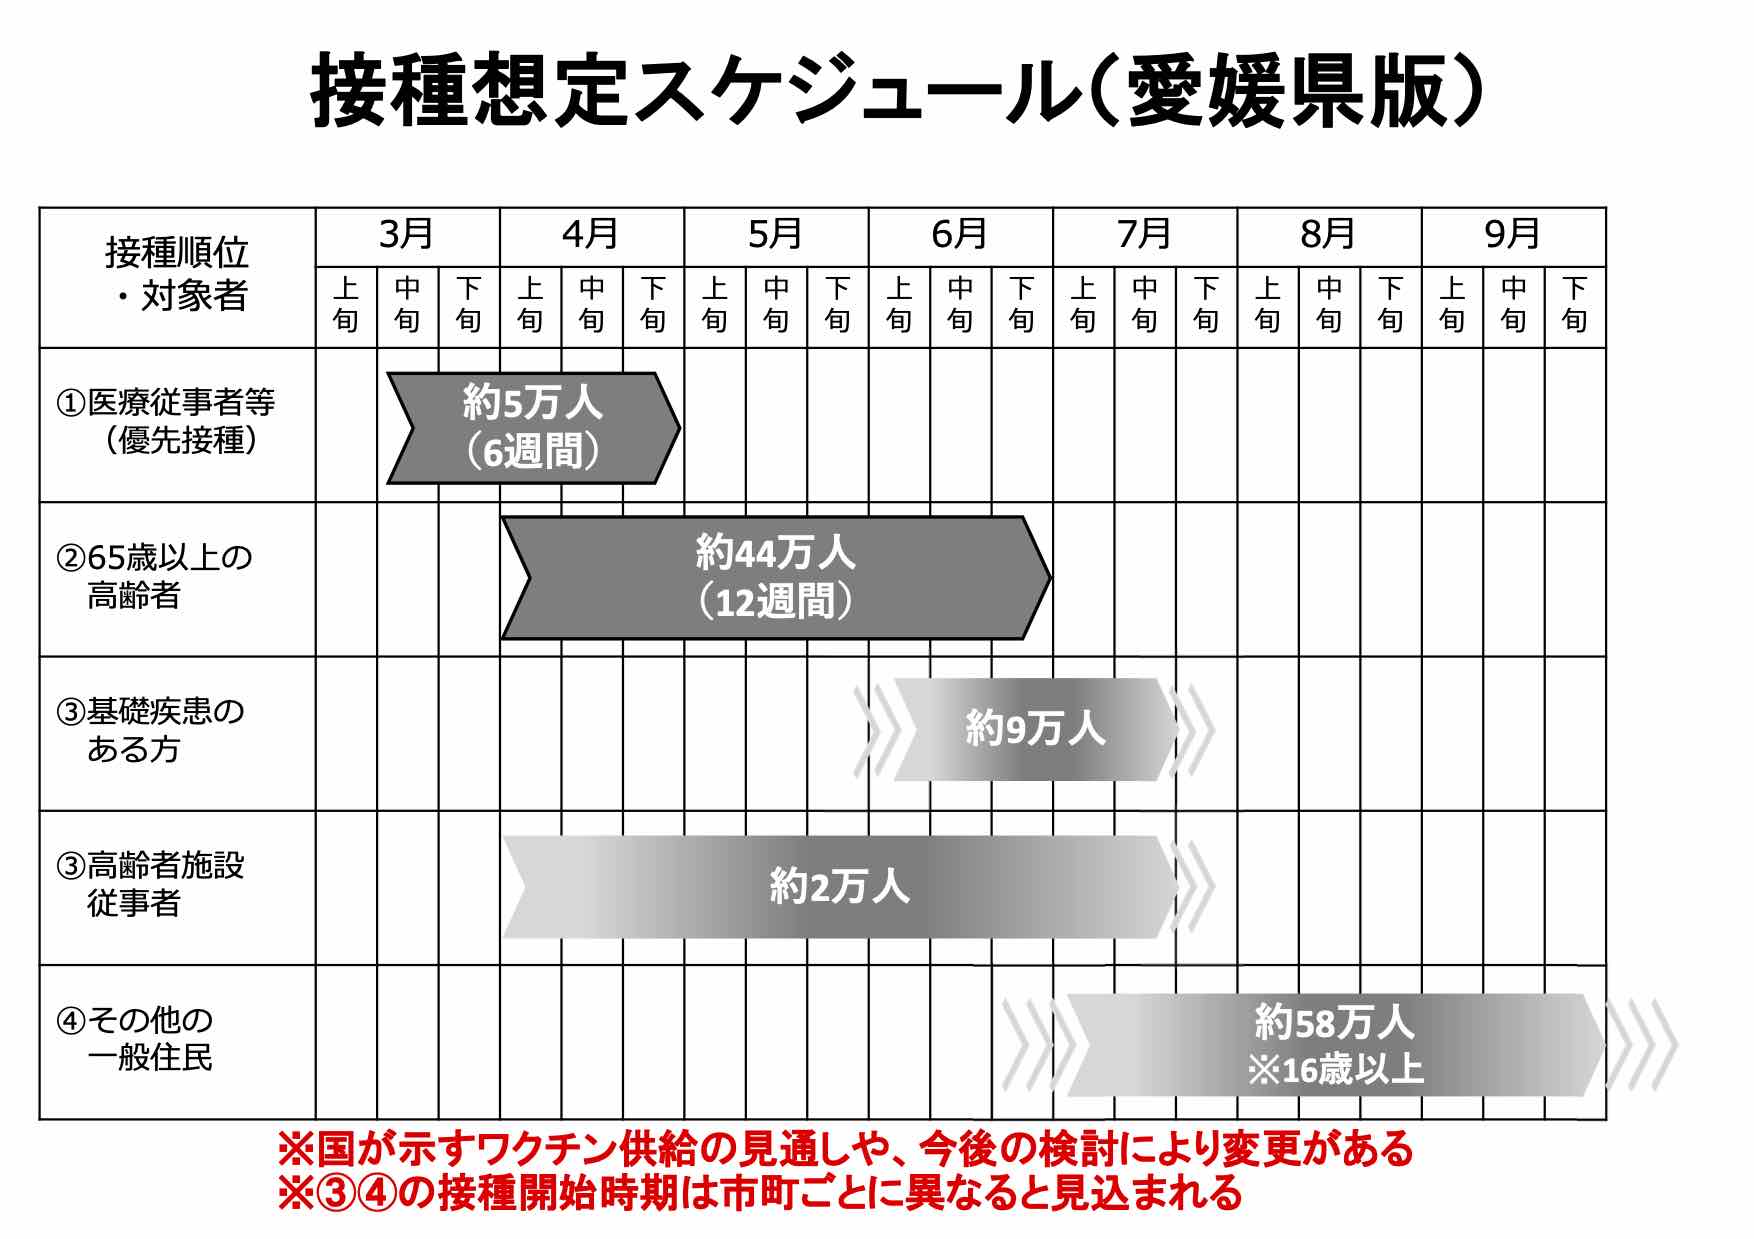 感染 者 県 愛媛 愛媛県で過去最多の感染者数、感染爆発がおきているとしか思えない。